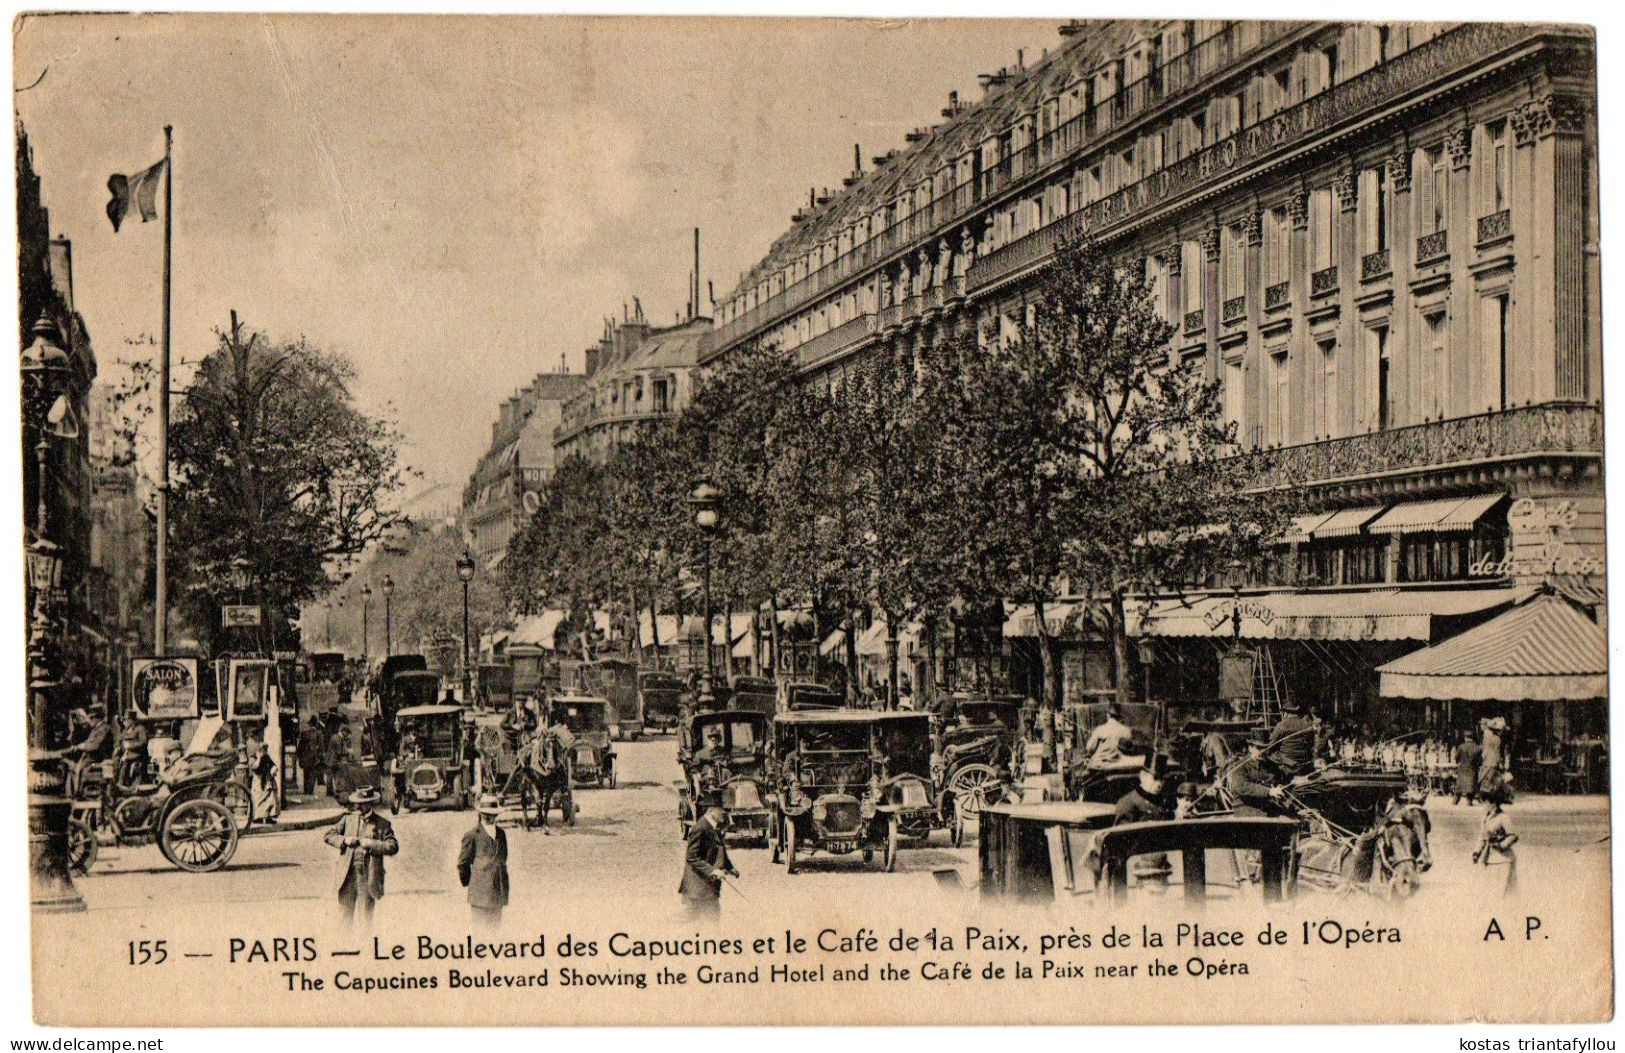 1.8.1 FRANCE, PARIS, LE BOULEVARD DES CAPUCINES, CAFE DE LA PAIX, PRES DE LA PLACE DE L' OPERA, 1921, POSTCARD - Arrondissement: 09